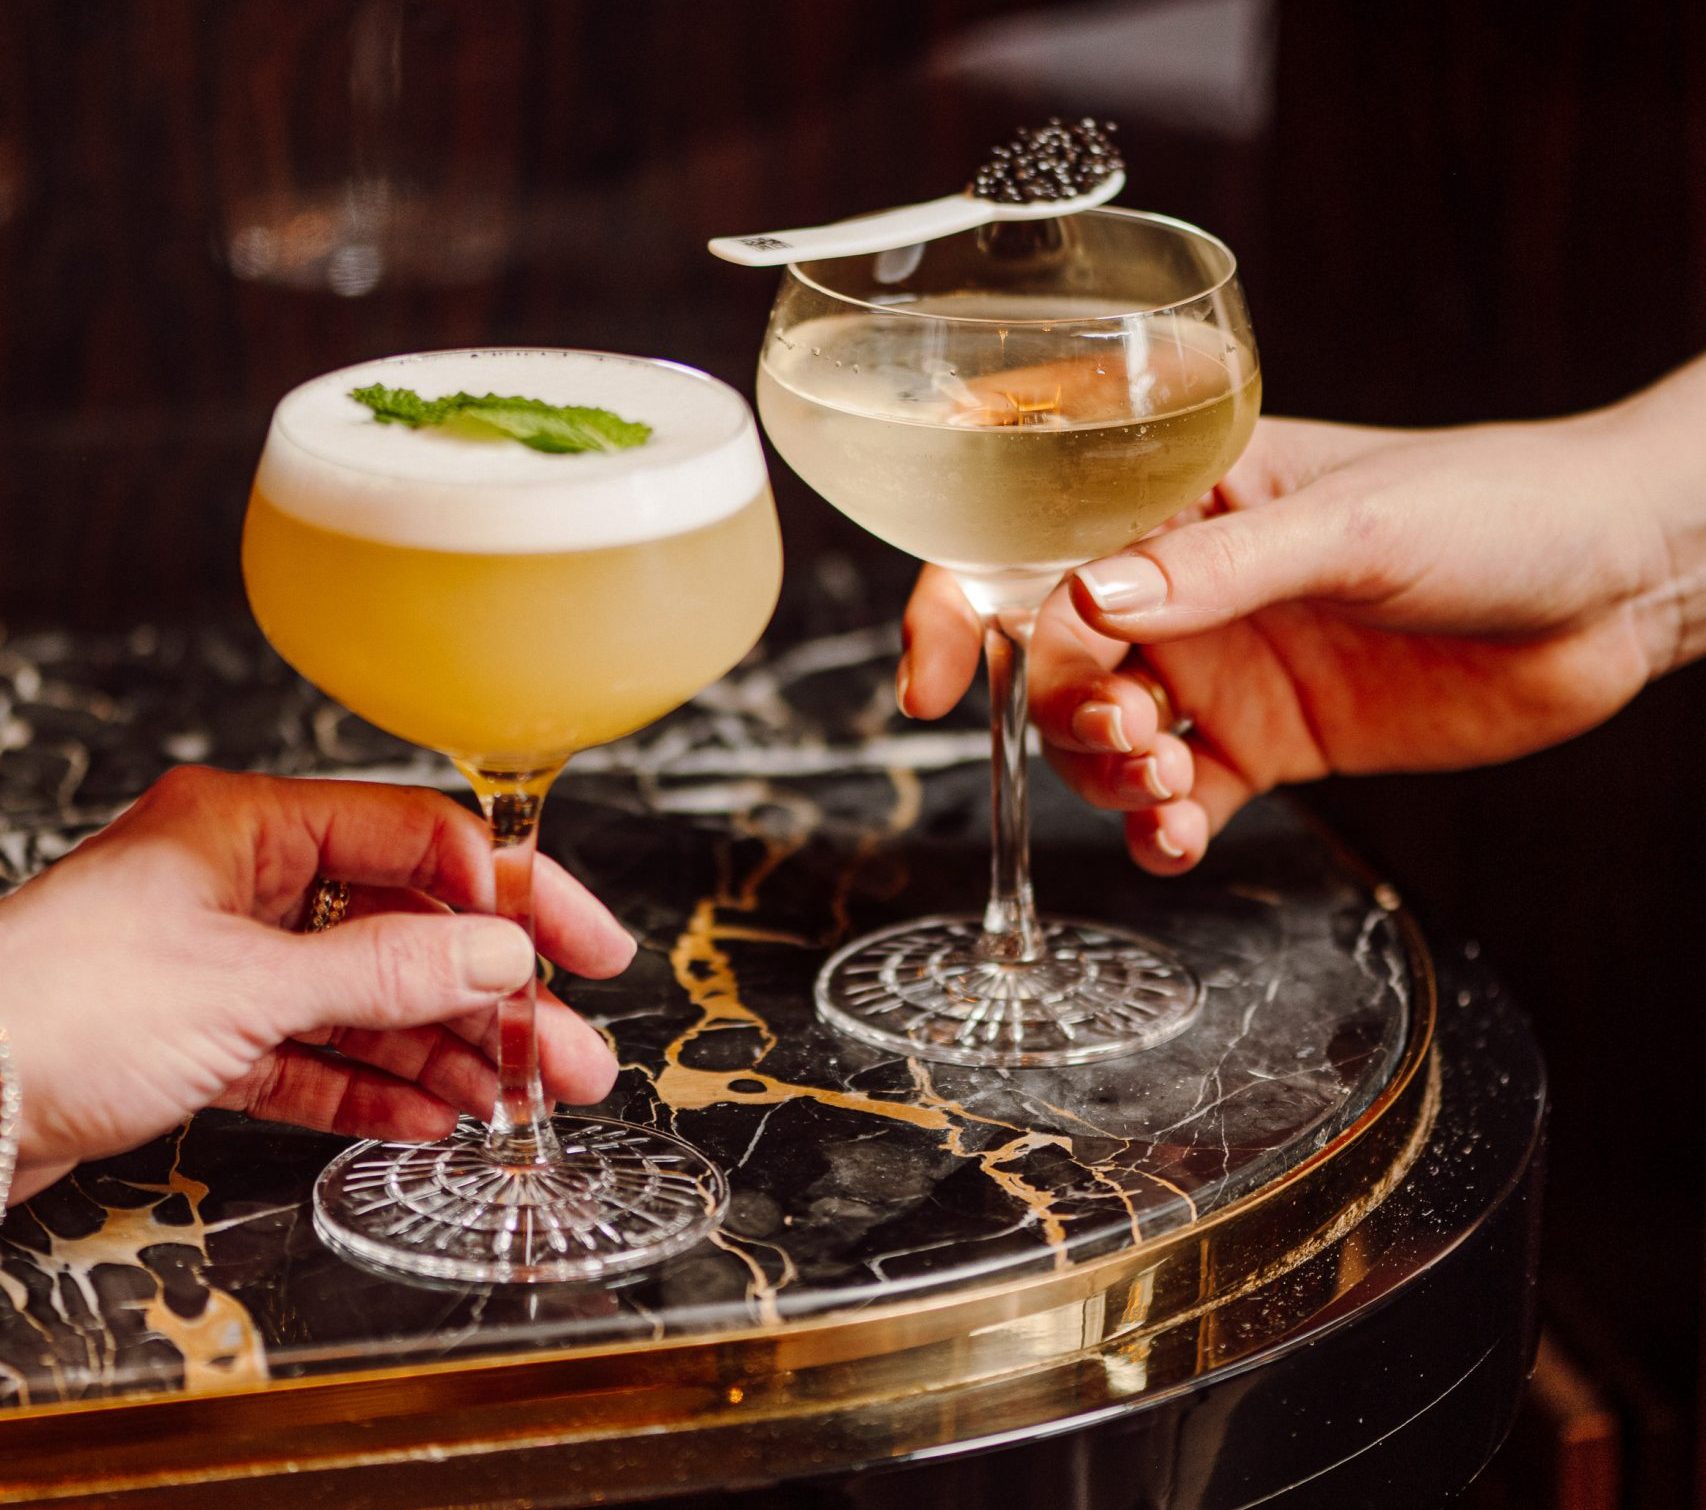 The new signature cocktails from La Maison du Caviar.